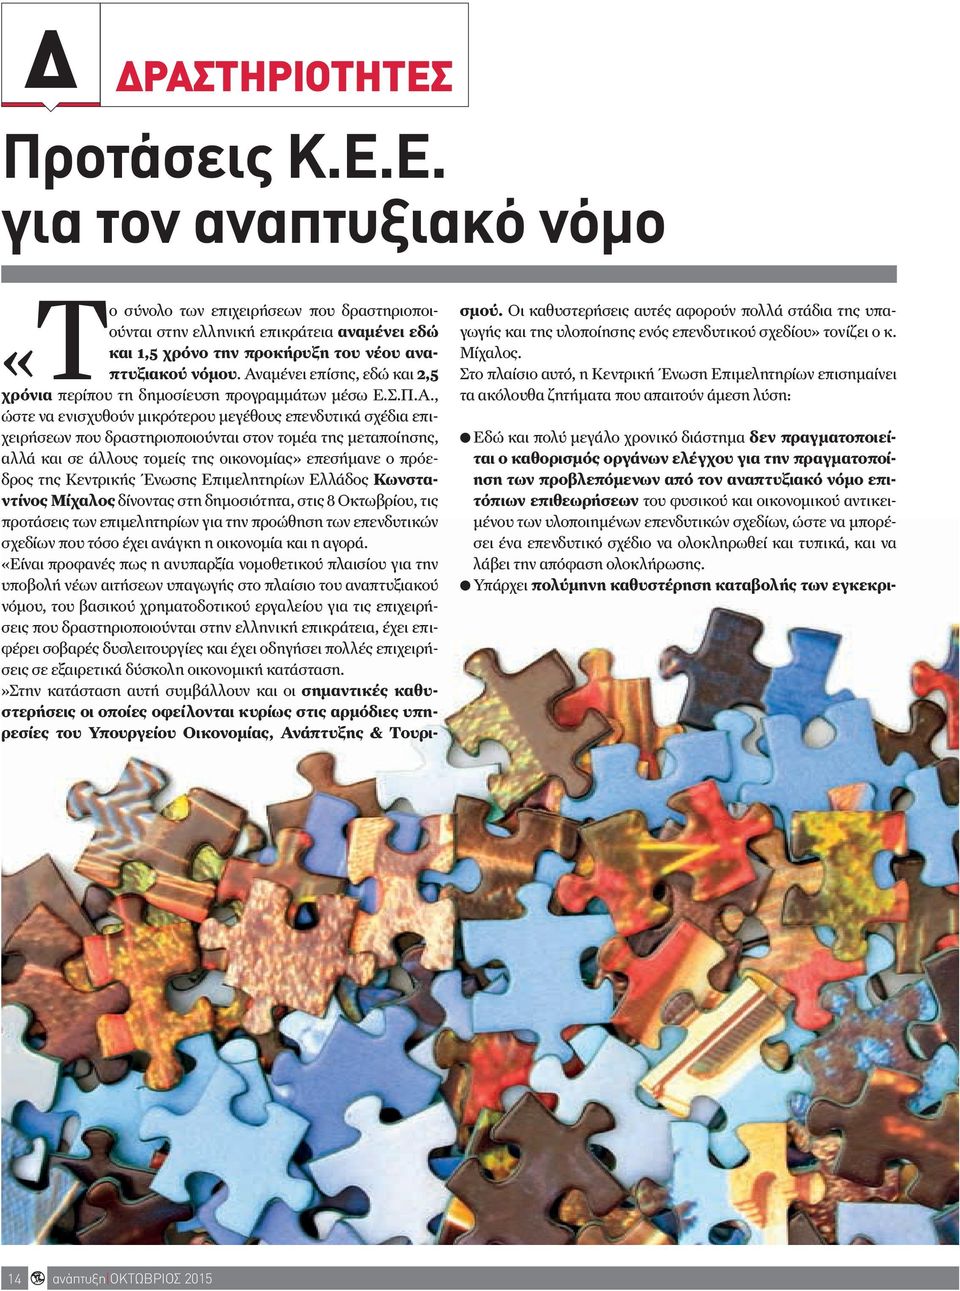 μεταποίησης, αλλά και σε άλλους τομείς της οικονομίας» επεσήμανε ο πρόεδρος της Κεντρικής Ένωσης Επιμελητηρίων Ελλάδος Κωνσταντίνος Μίχαλος δίνοντας στη δημοσιότητα, στις 8 Οκτωβρίου, τις προτάσεις